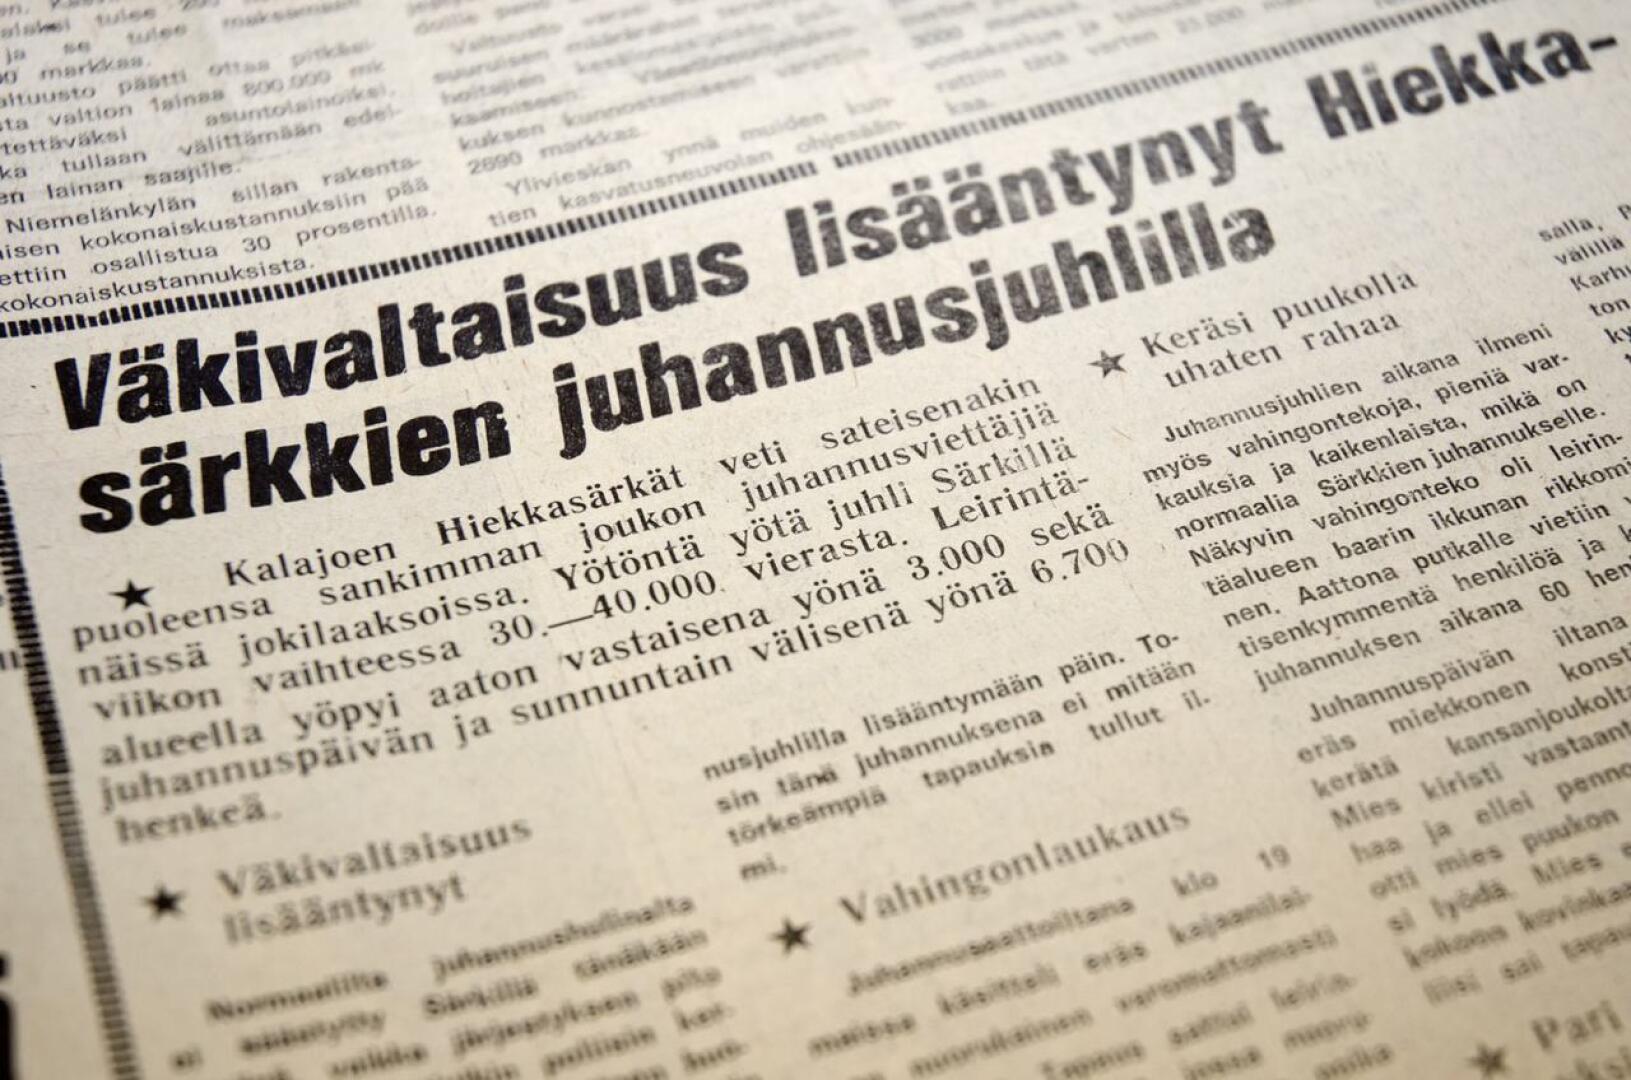 50 vuotta vanha Kalajokilaakso uutisoi Kalajoen Hiekkasärkkien juhannushulinoiden väkivaltaisuuksista. Ja juhannusmissin uupumisesta.